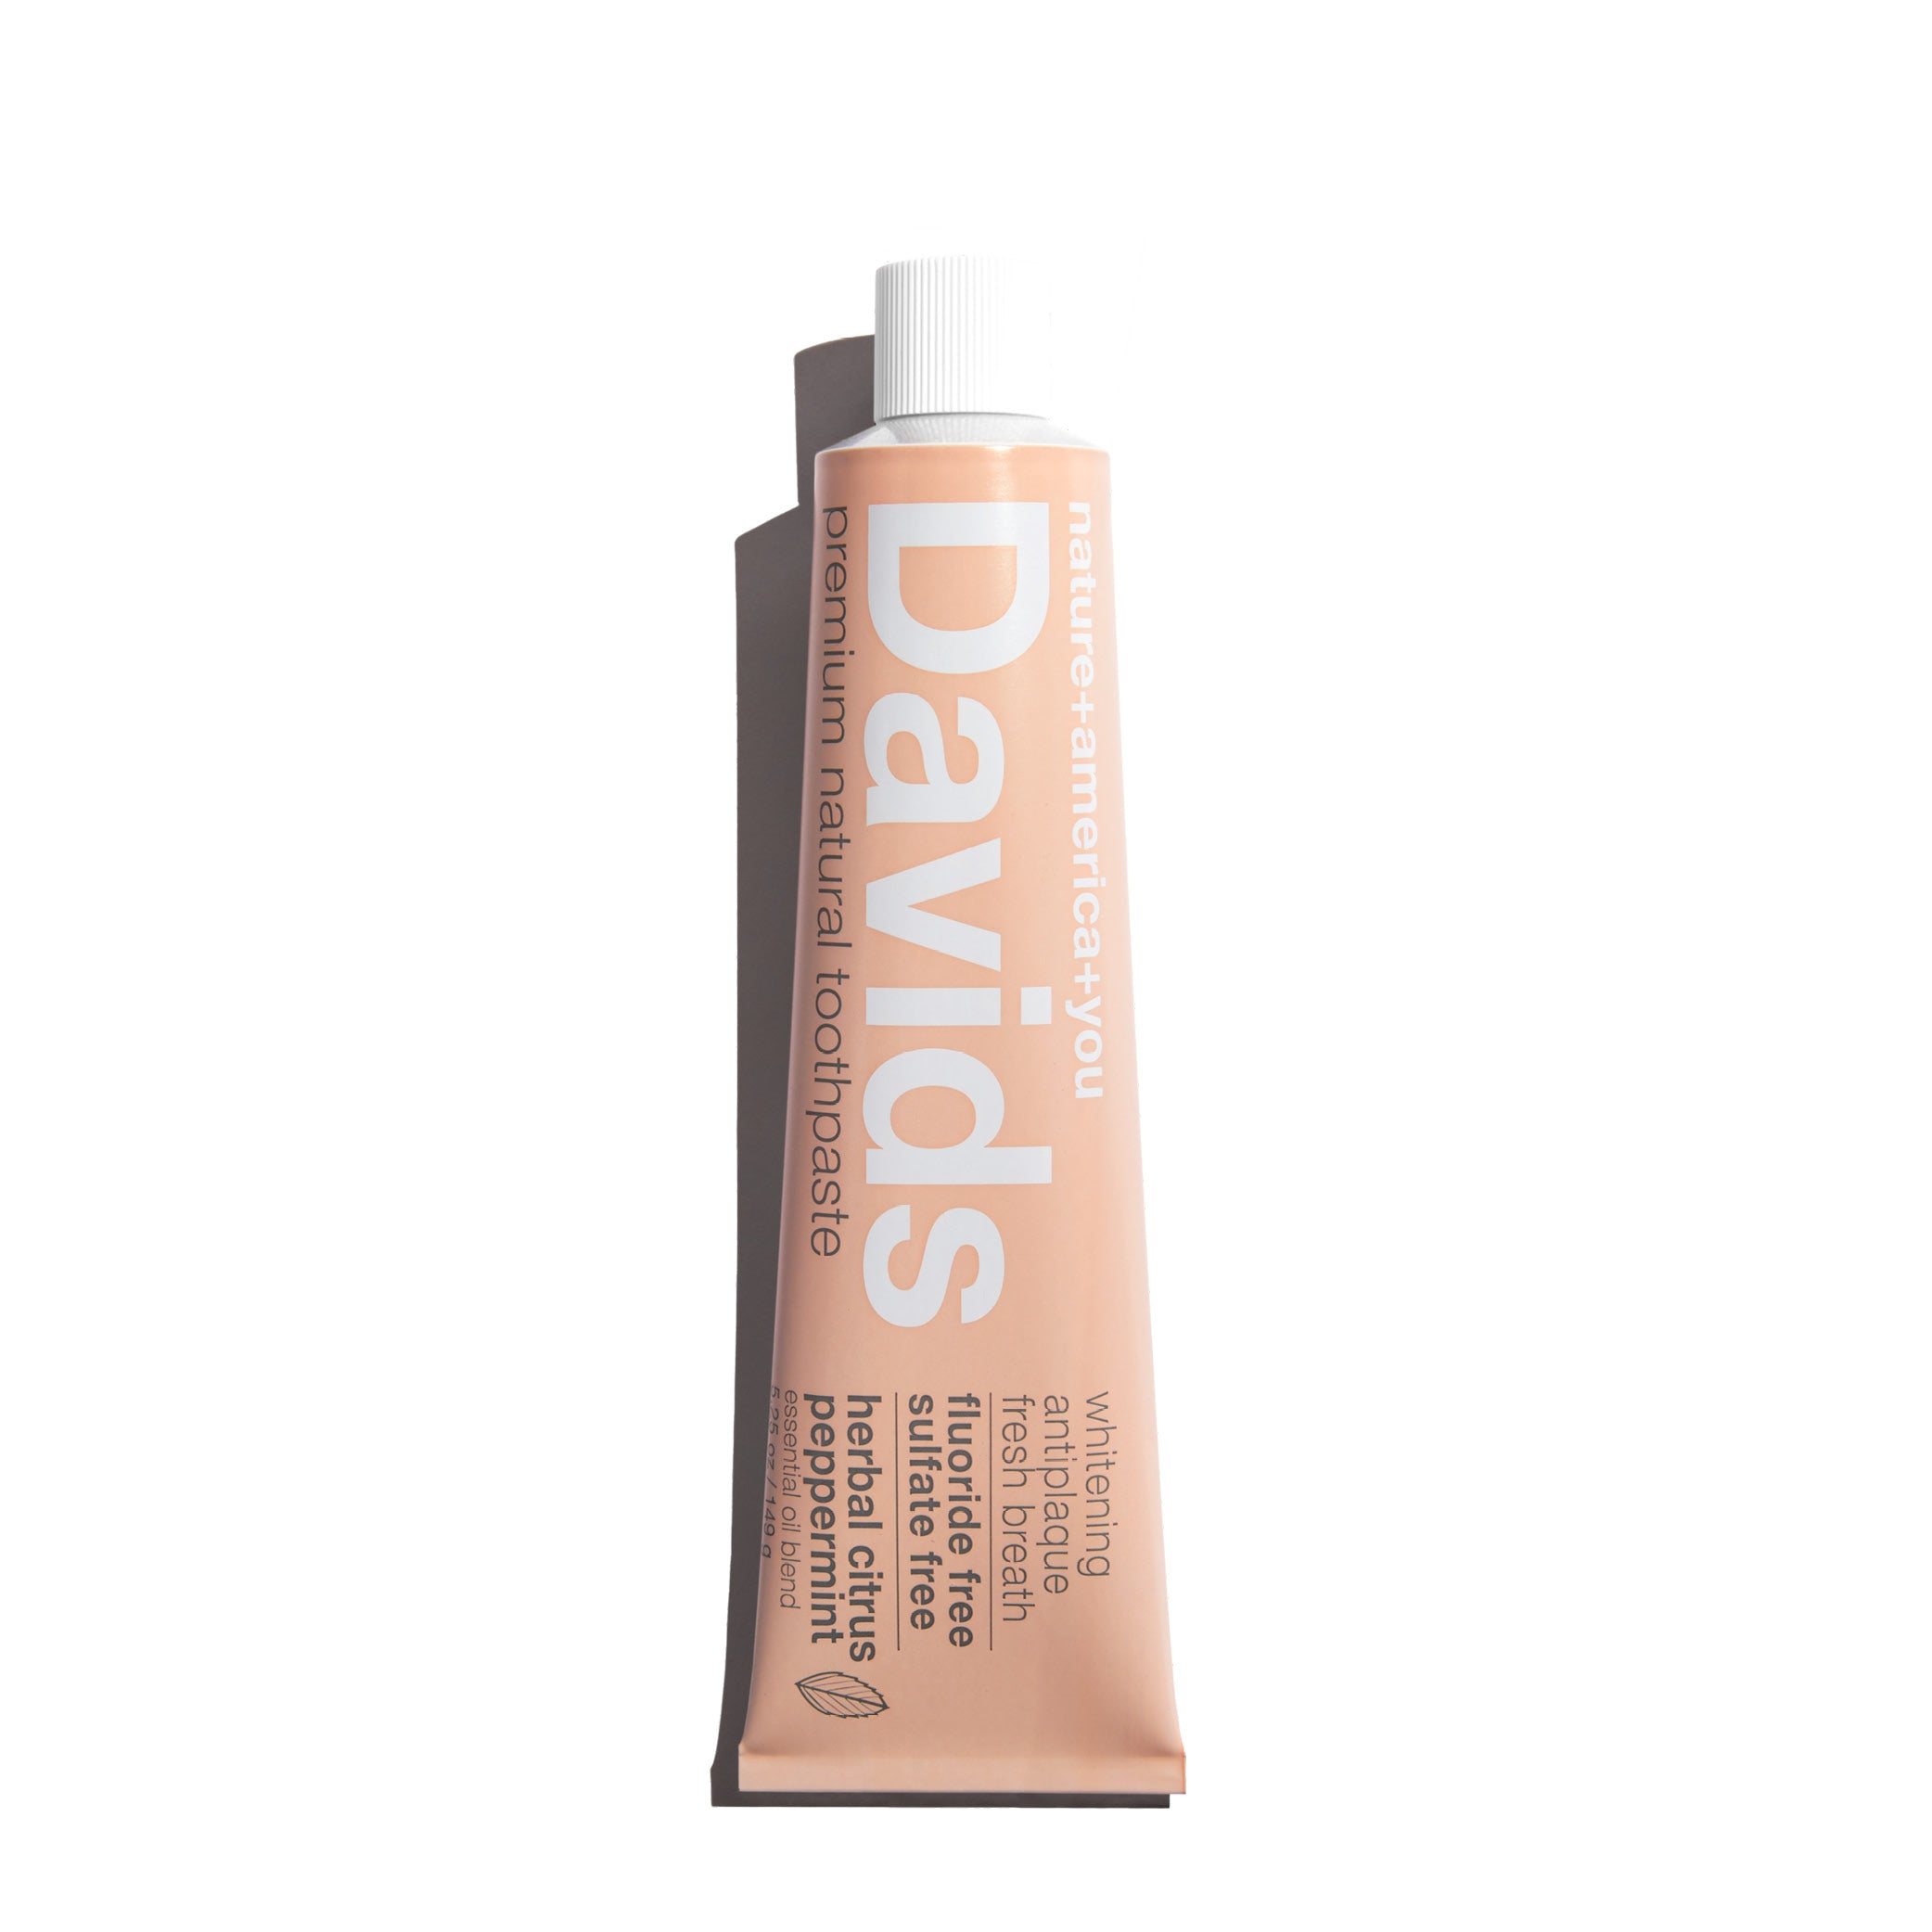 Davids Premium Toothpaste / Herbal Citrus Peppermint